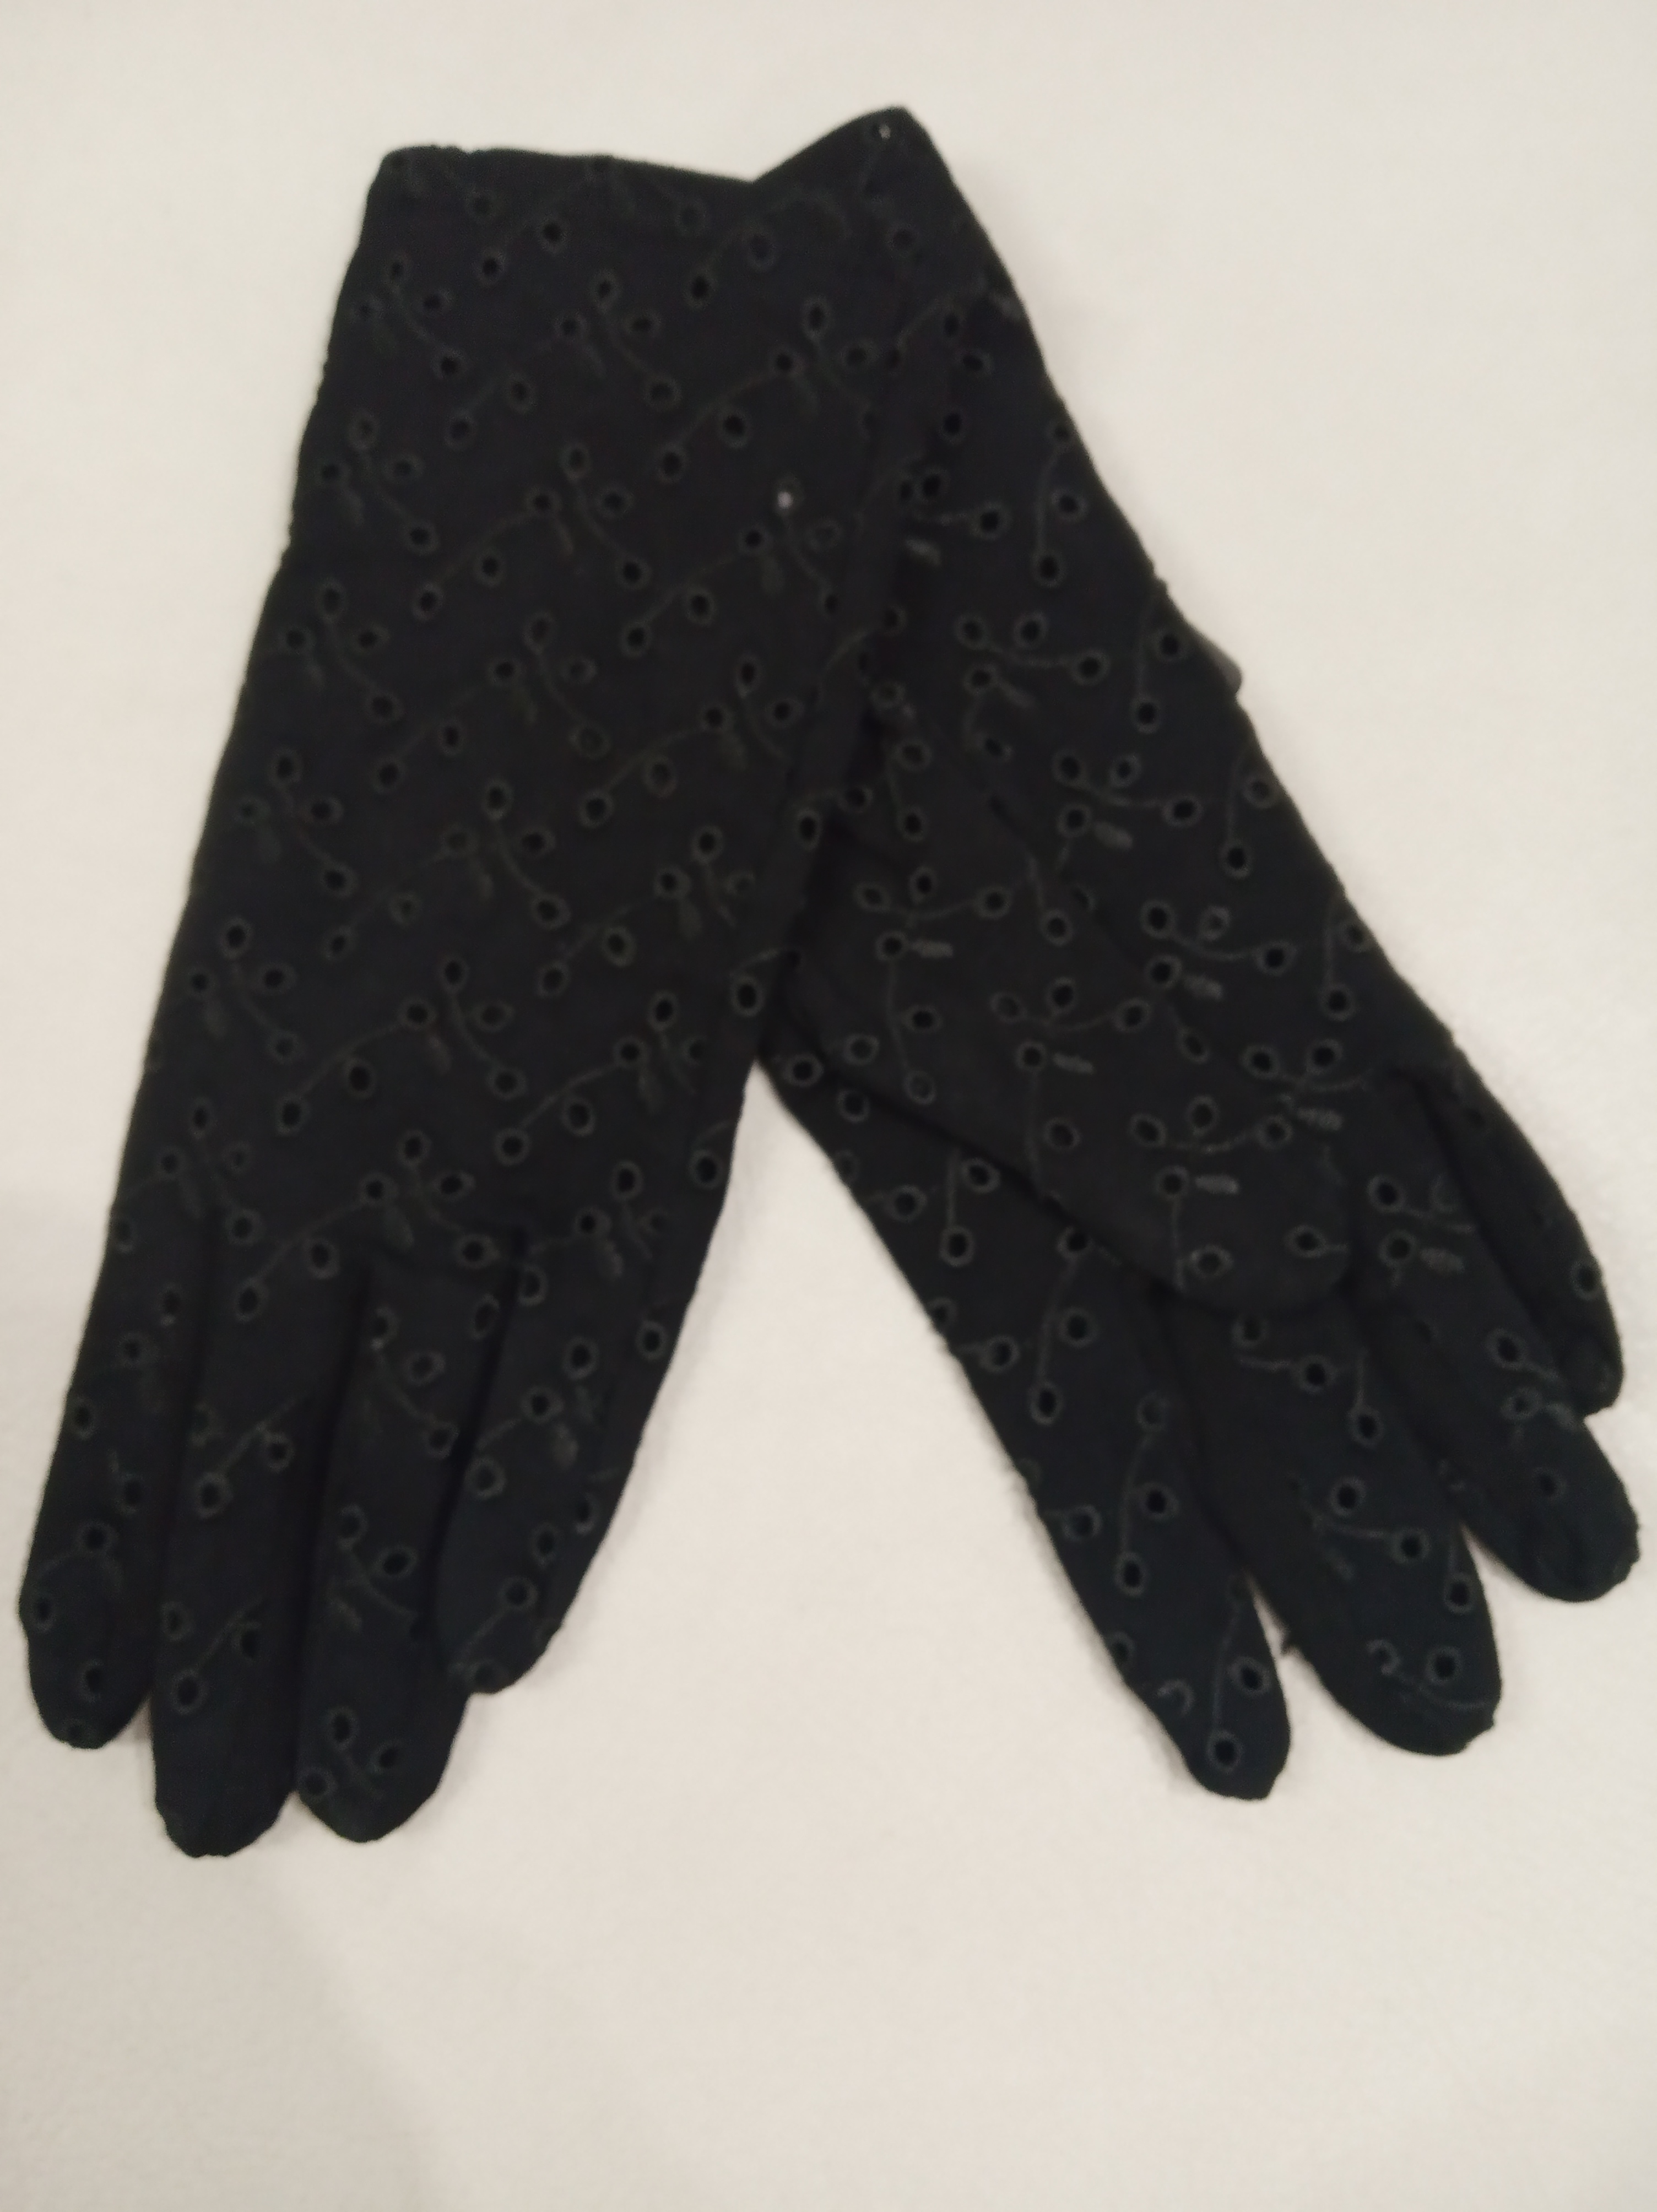 Как сшить перчатки из кожи своими руками? | Катюшенька Ру — мир шитья